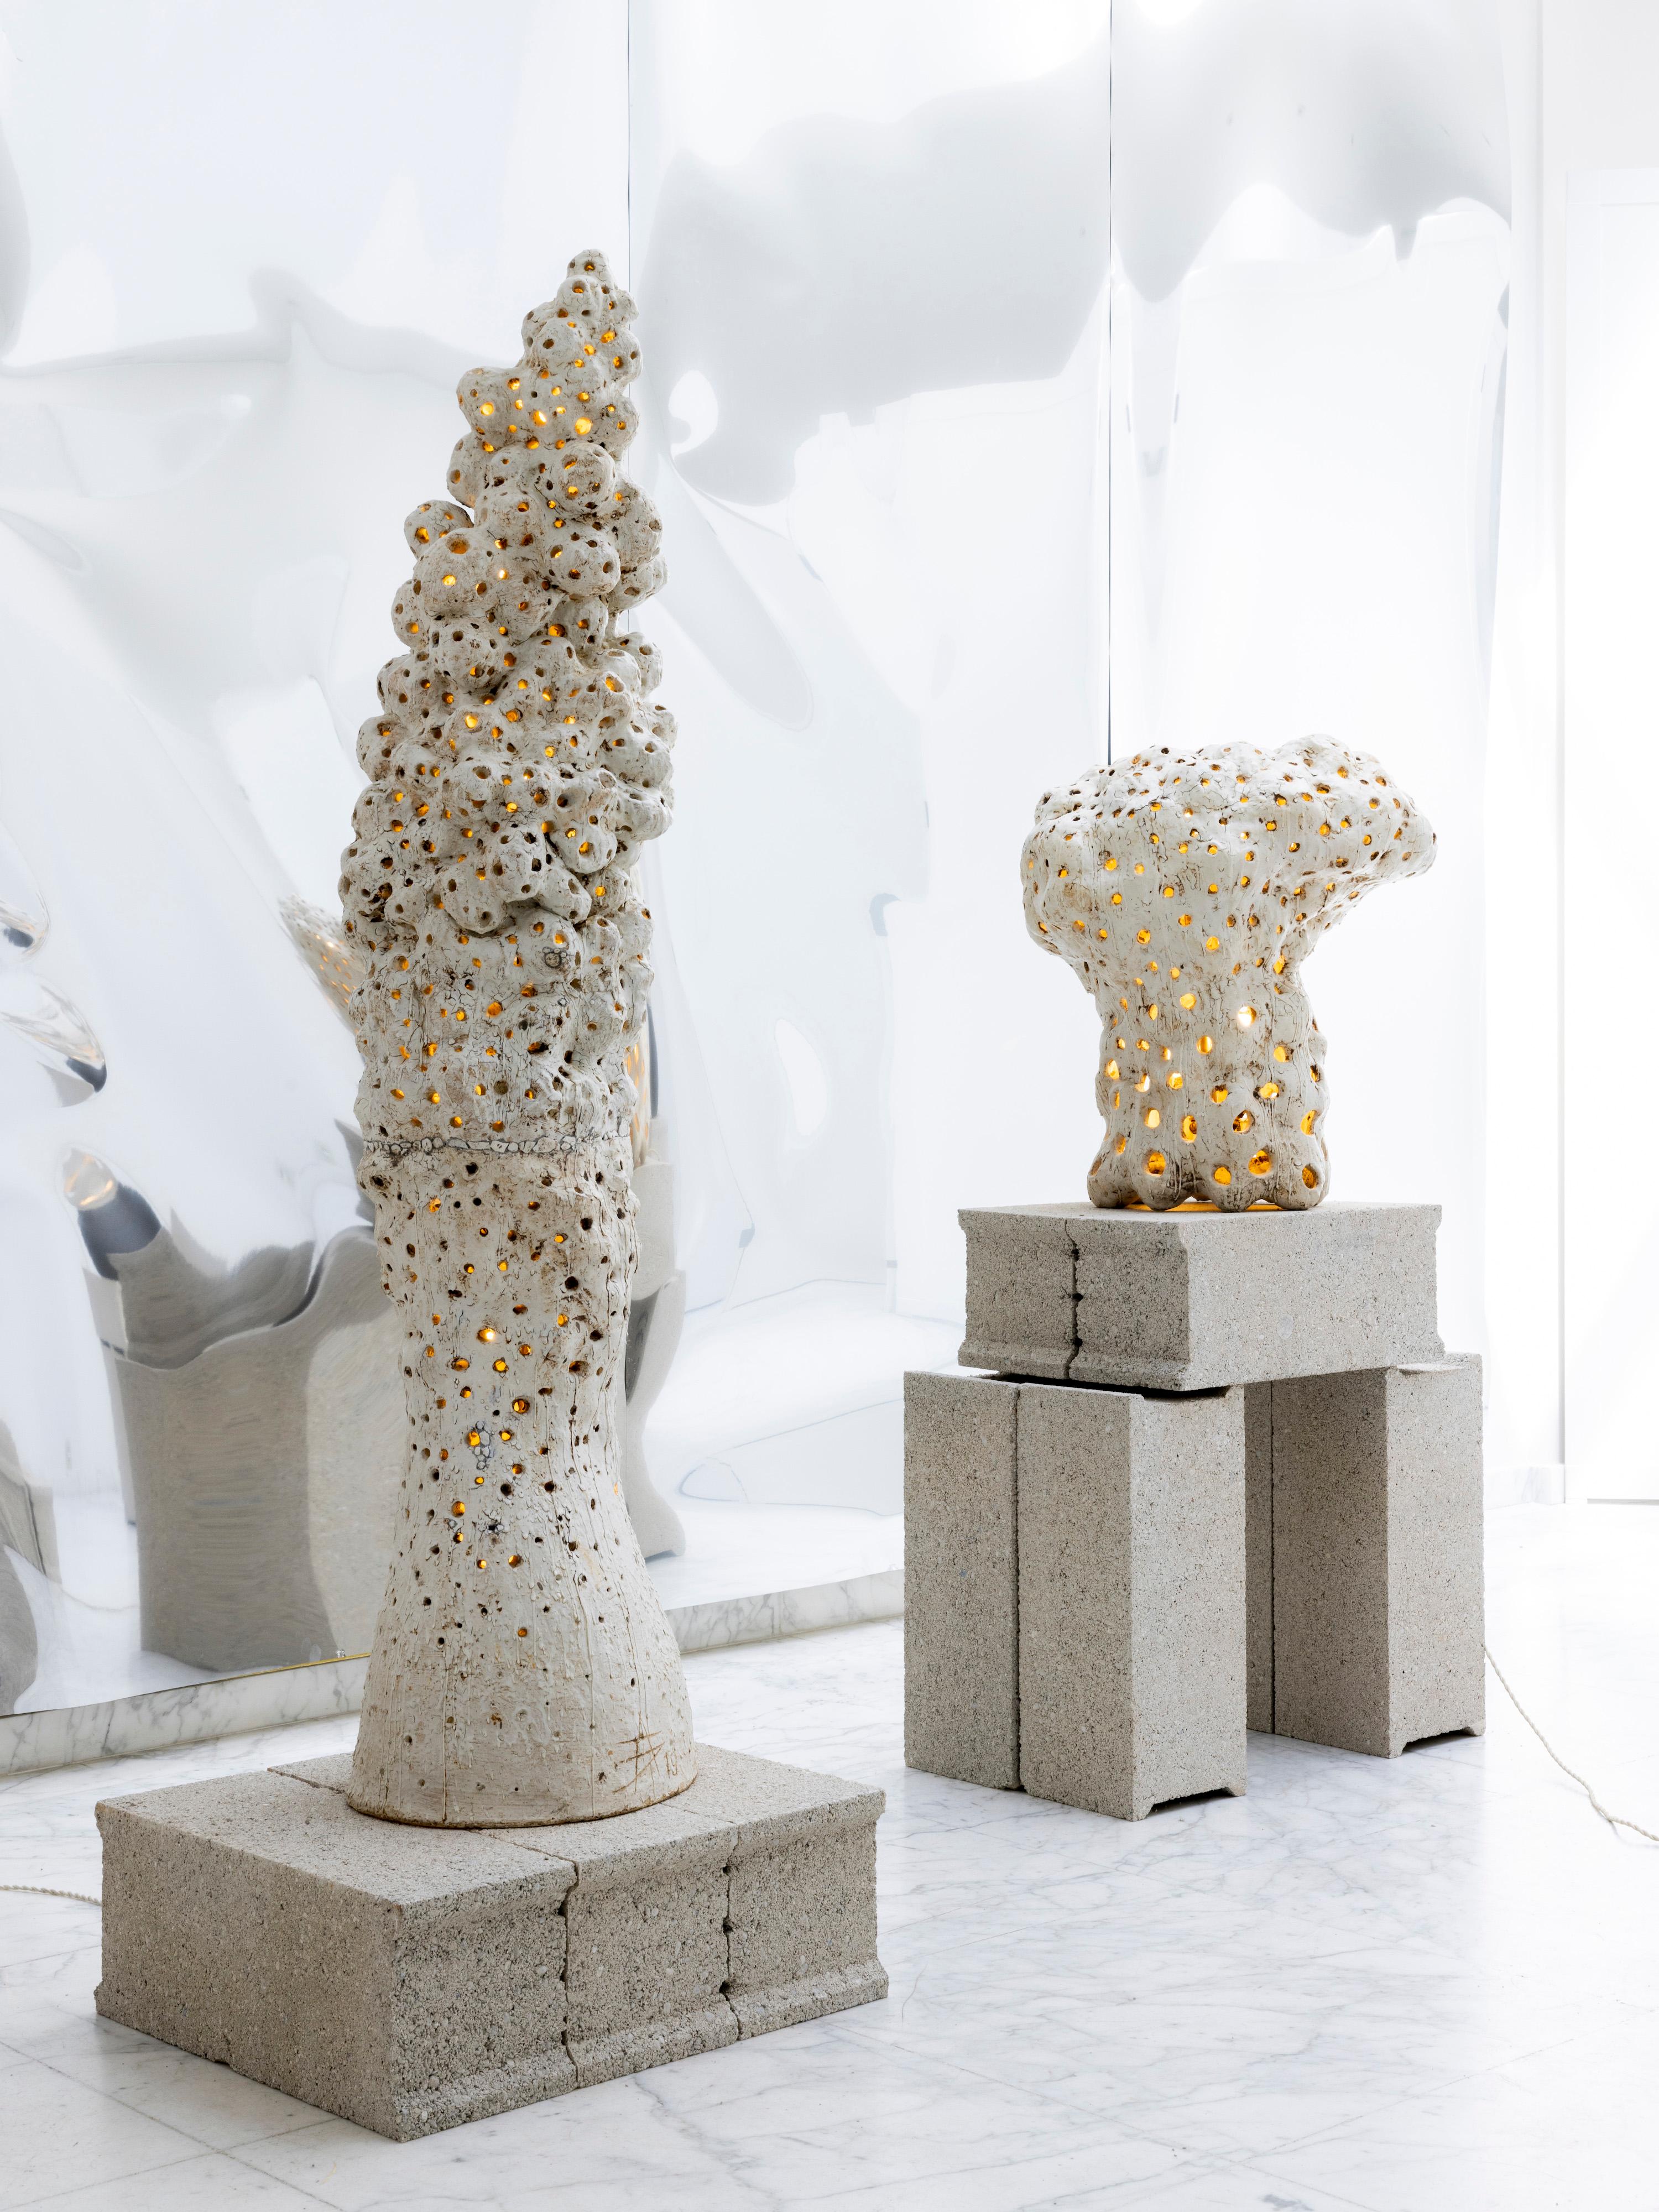 French Contemporary Ceramic Floor Lamp Sculpture by Agnès Debizet, 2019 For Sale